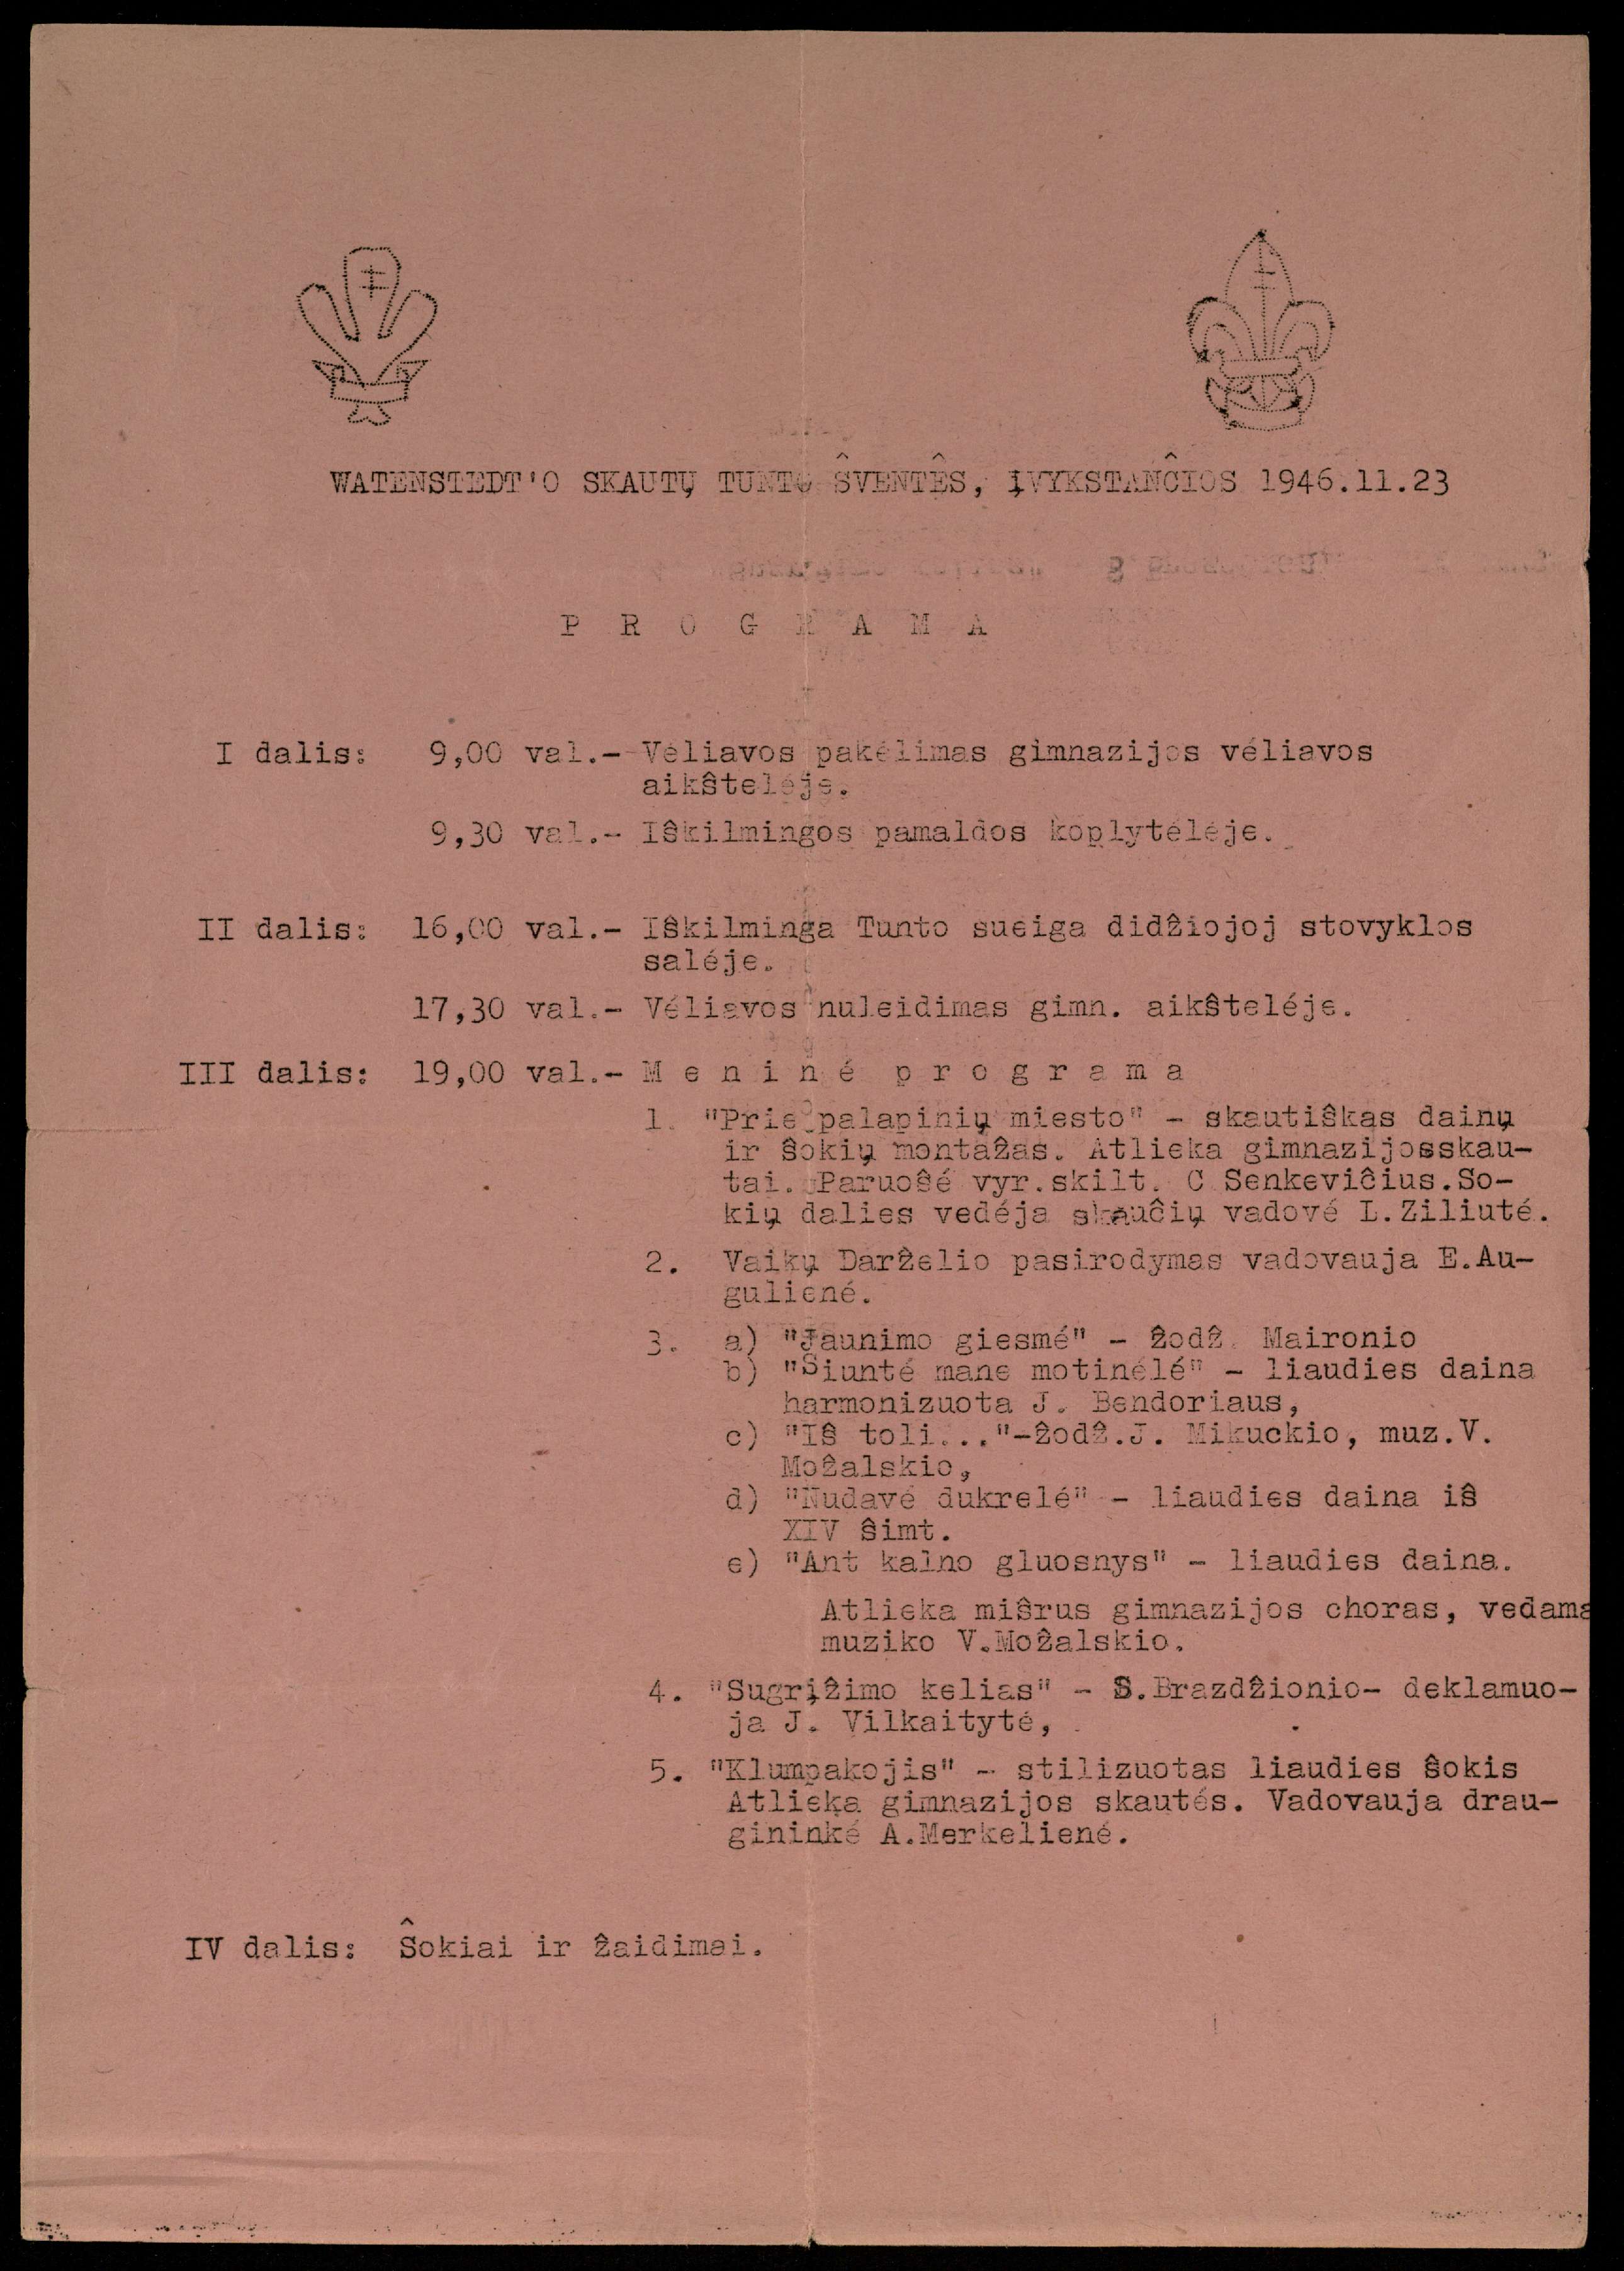 Watenstedt ’o skautų tunto šventės, įvyksiančios 1946.11.23 programa